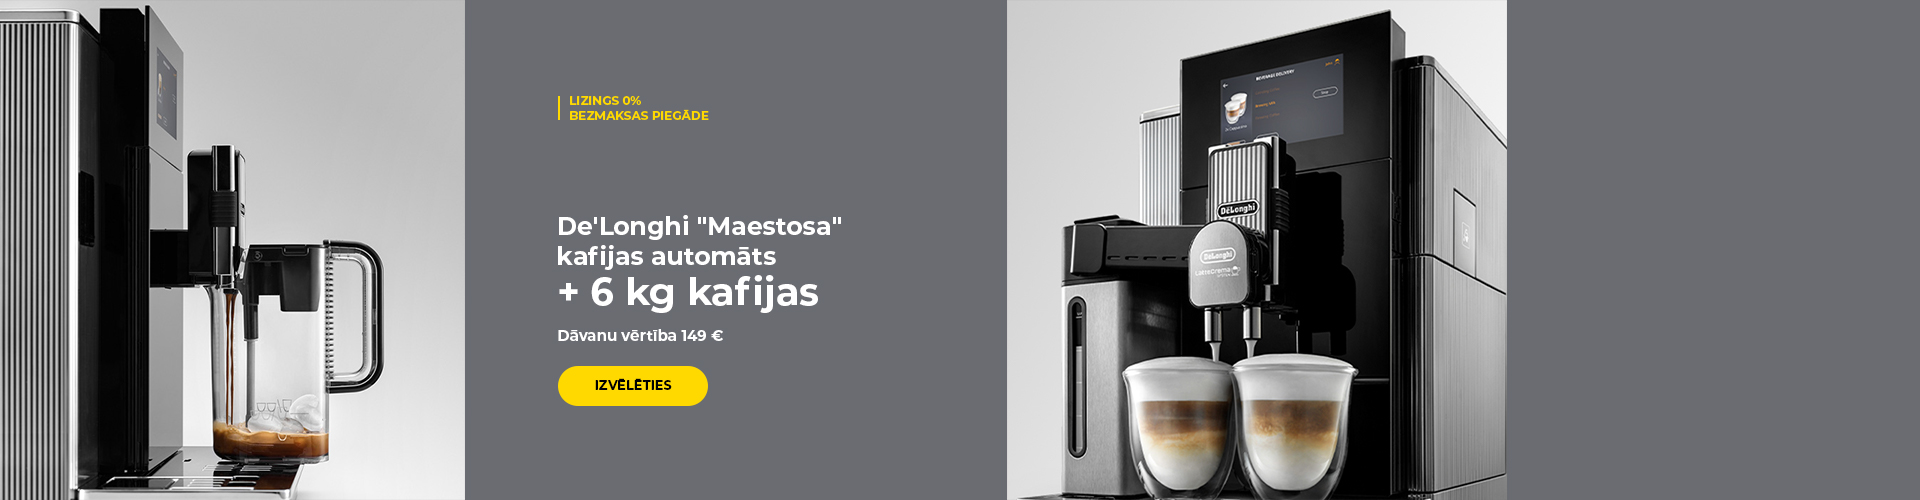 De'Longhi "Maestosa" kafijas automāts + 6 kg kafijas